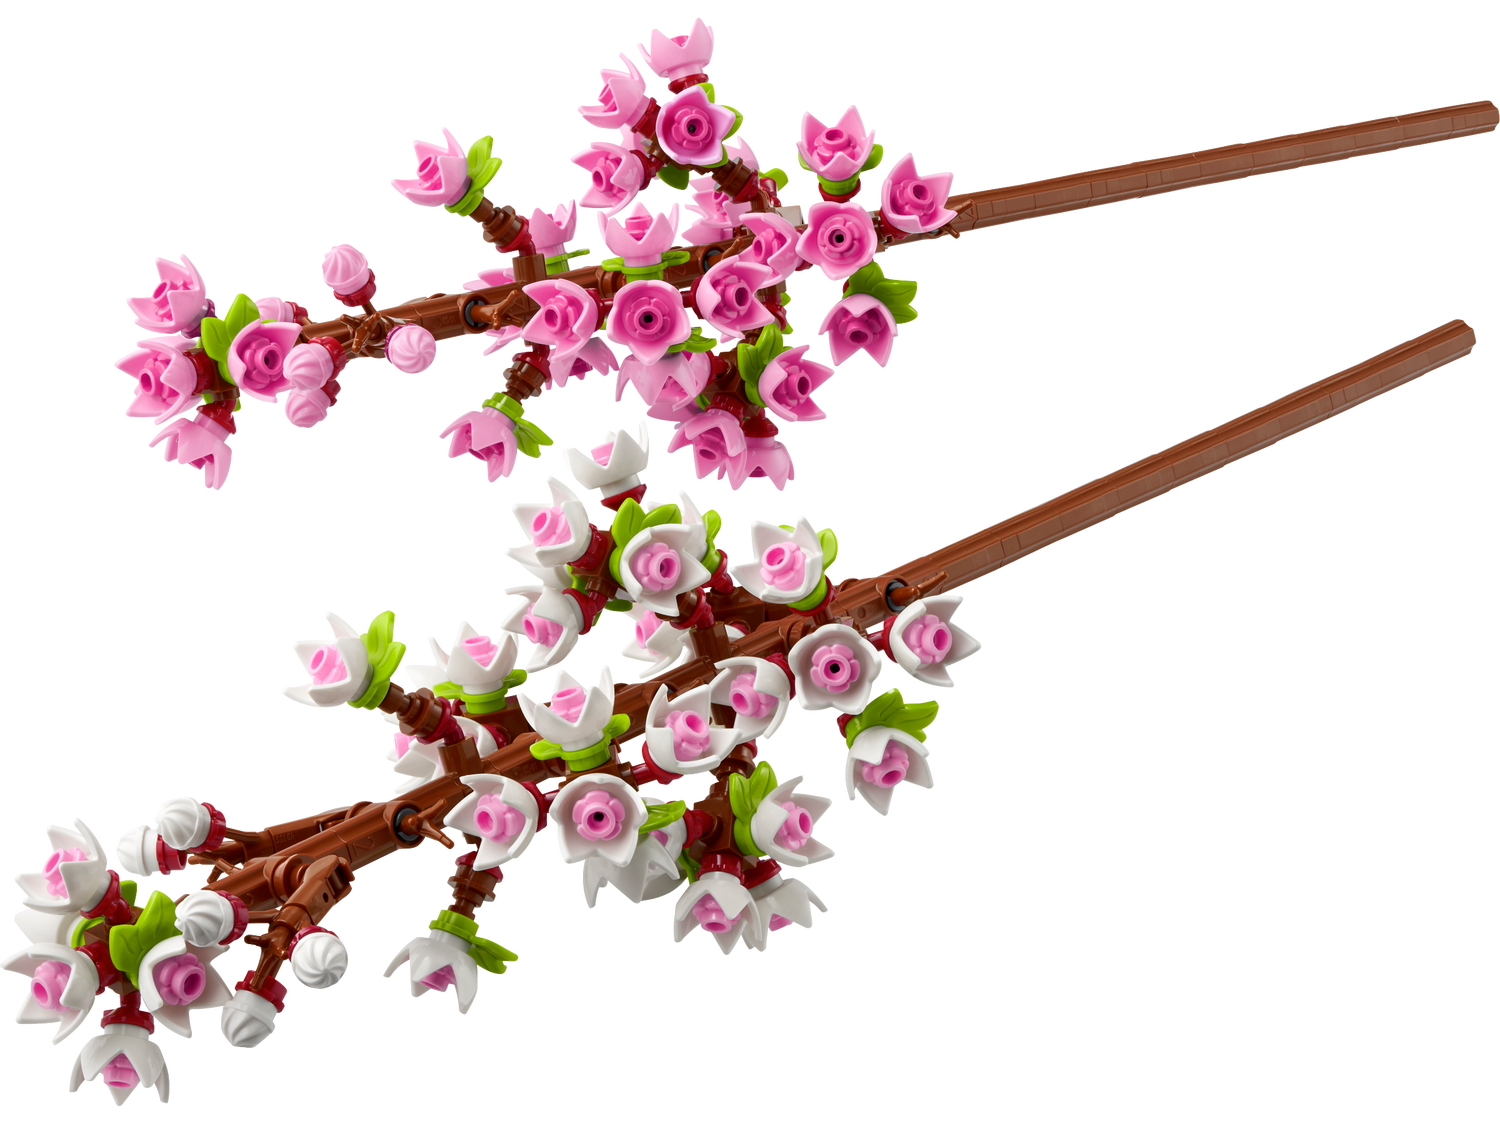 Les fleurs de cerisier 40725 | The Botanical Collection | Boutique LEGO® officielle FR 